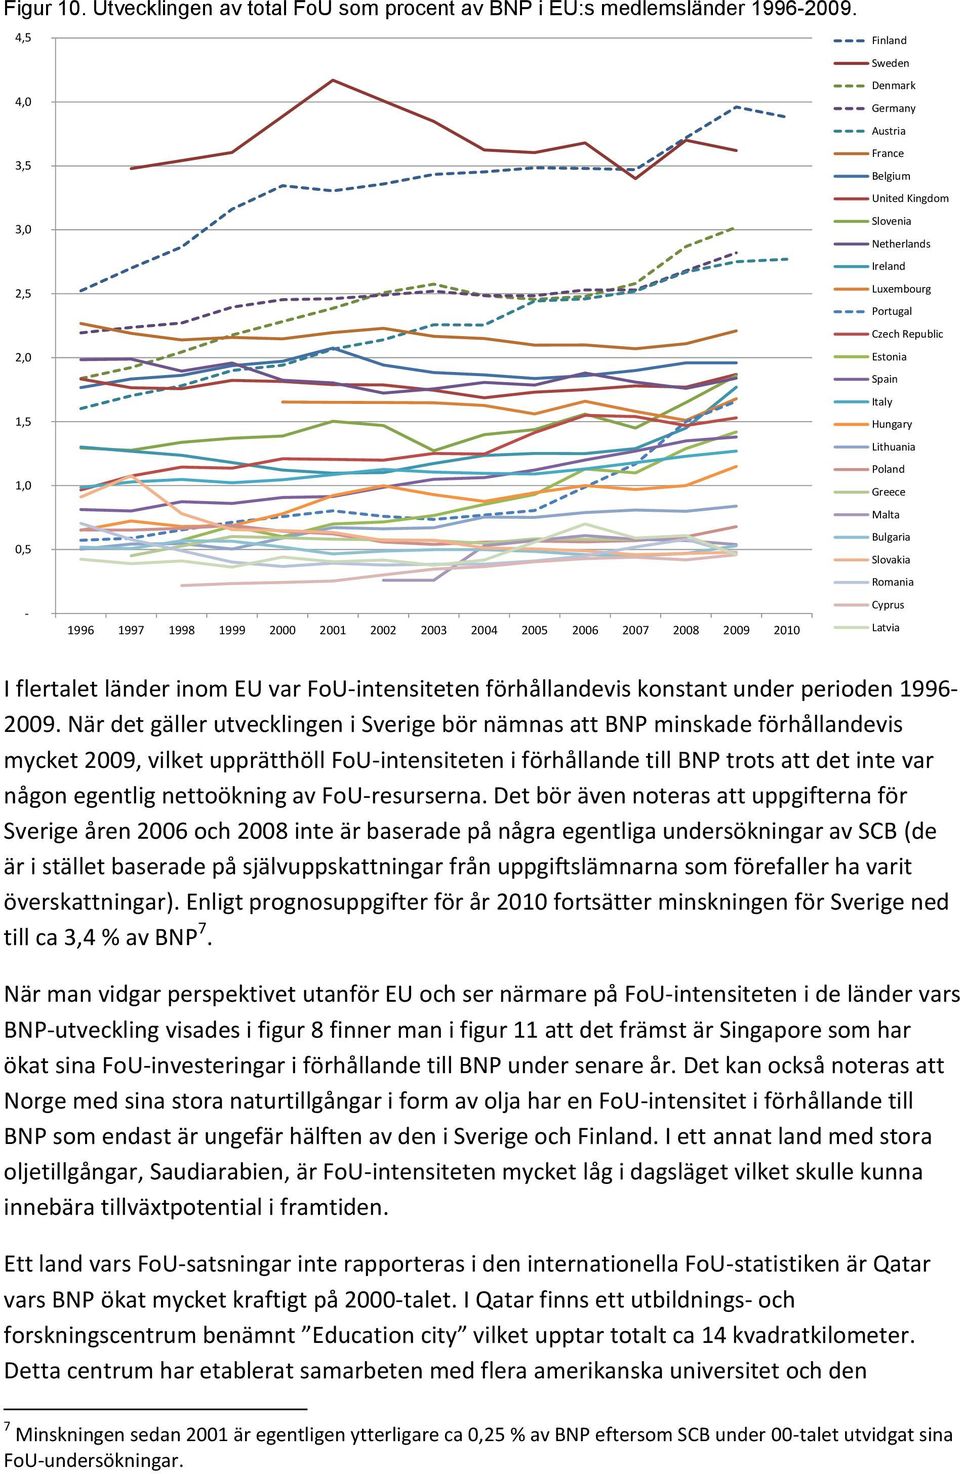 När det gäller utvecklingen i Sverige bör nämnas att BNP minskade förhållandevis mycket 29, vilket upprätthöll FoU-intensiteten i förhållande till BNP trots att det inte var någon egentlig